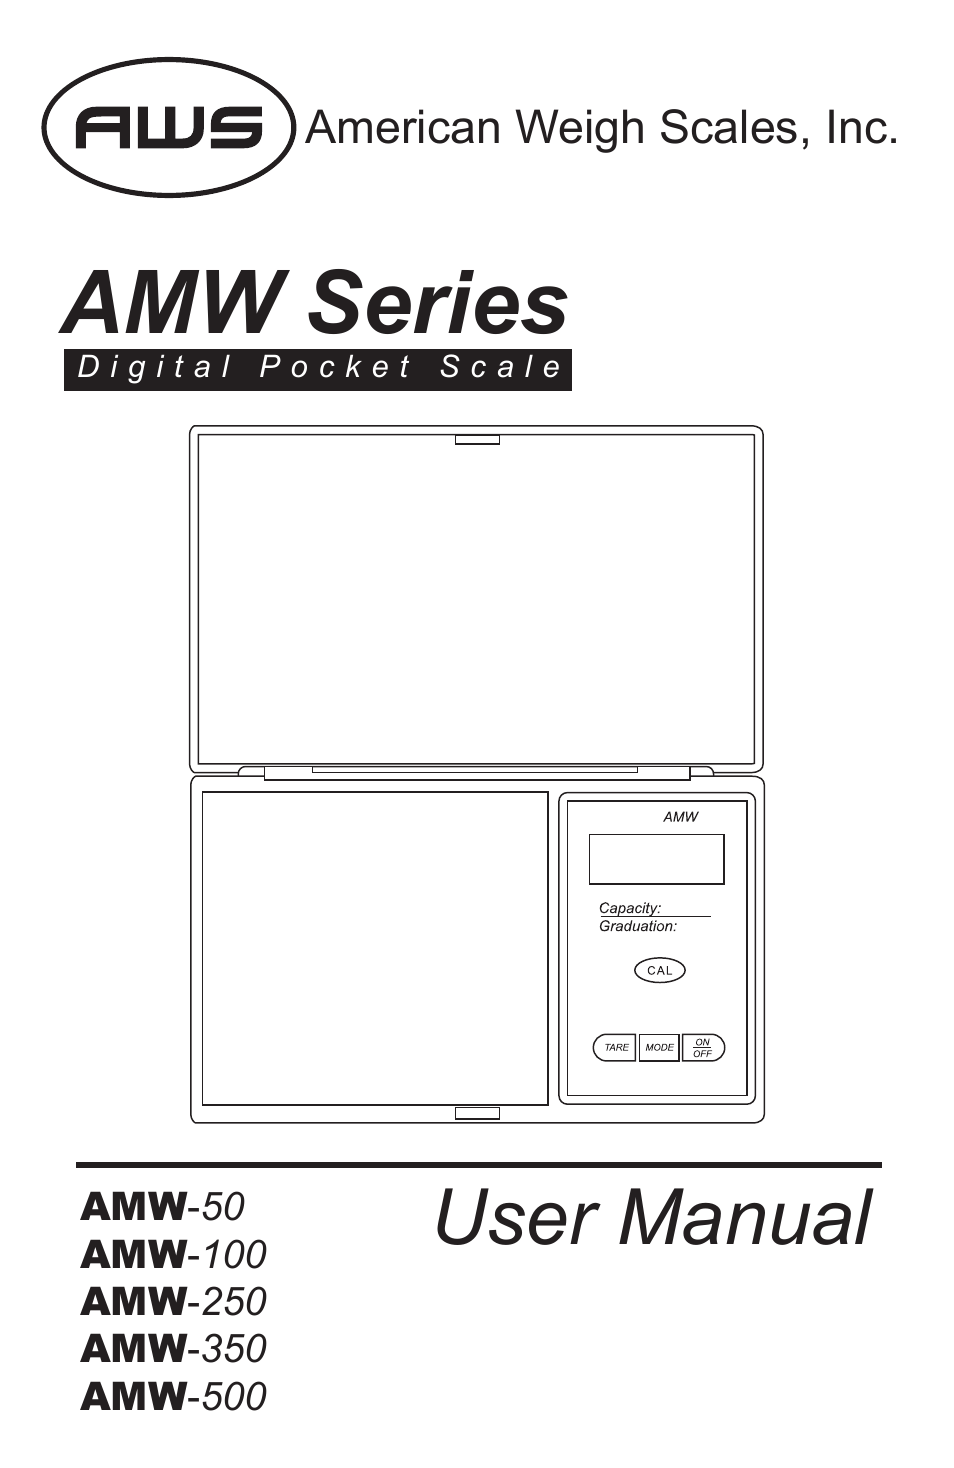 AMW-500